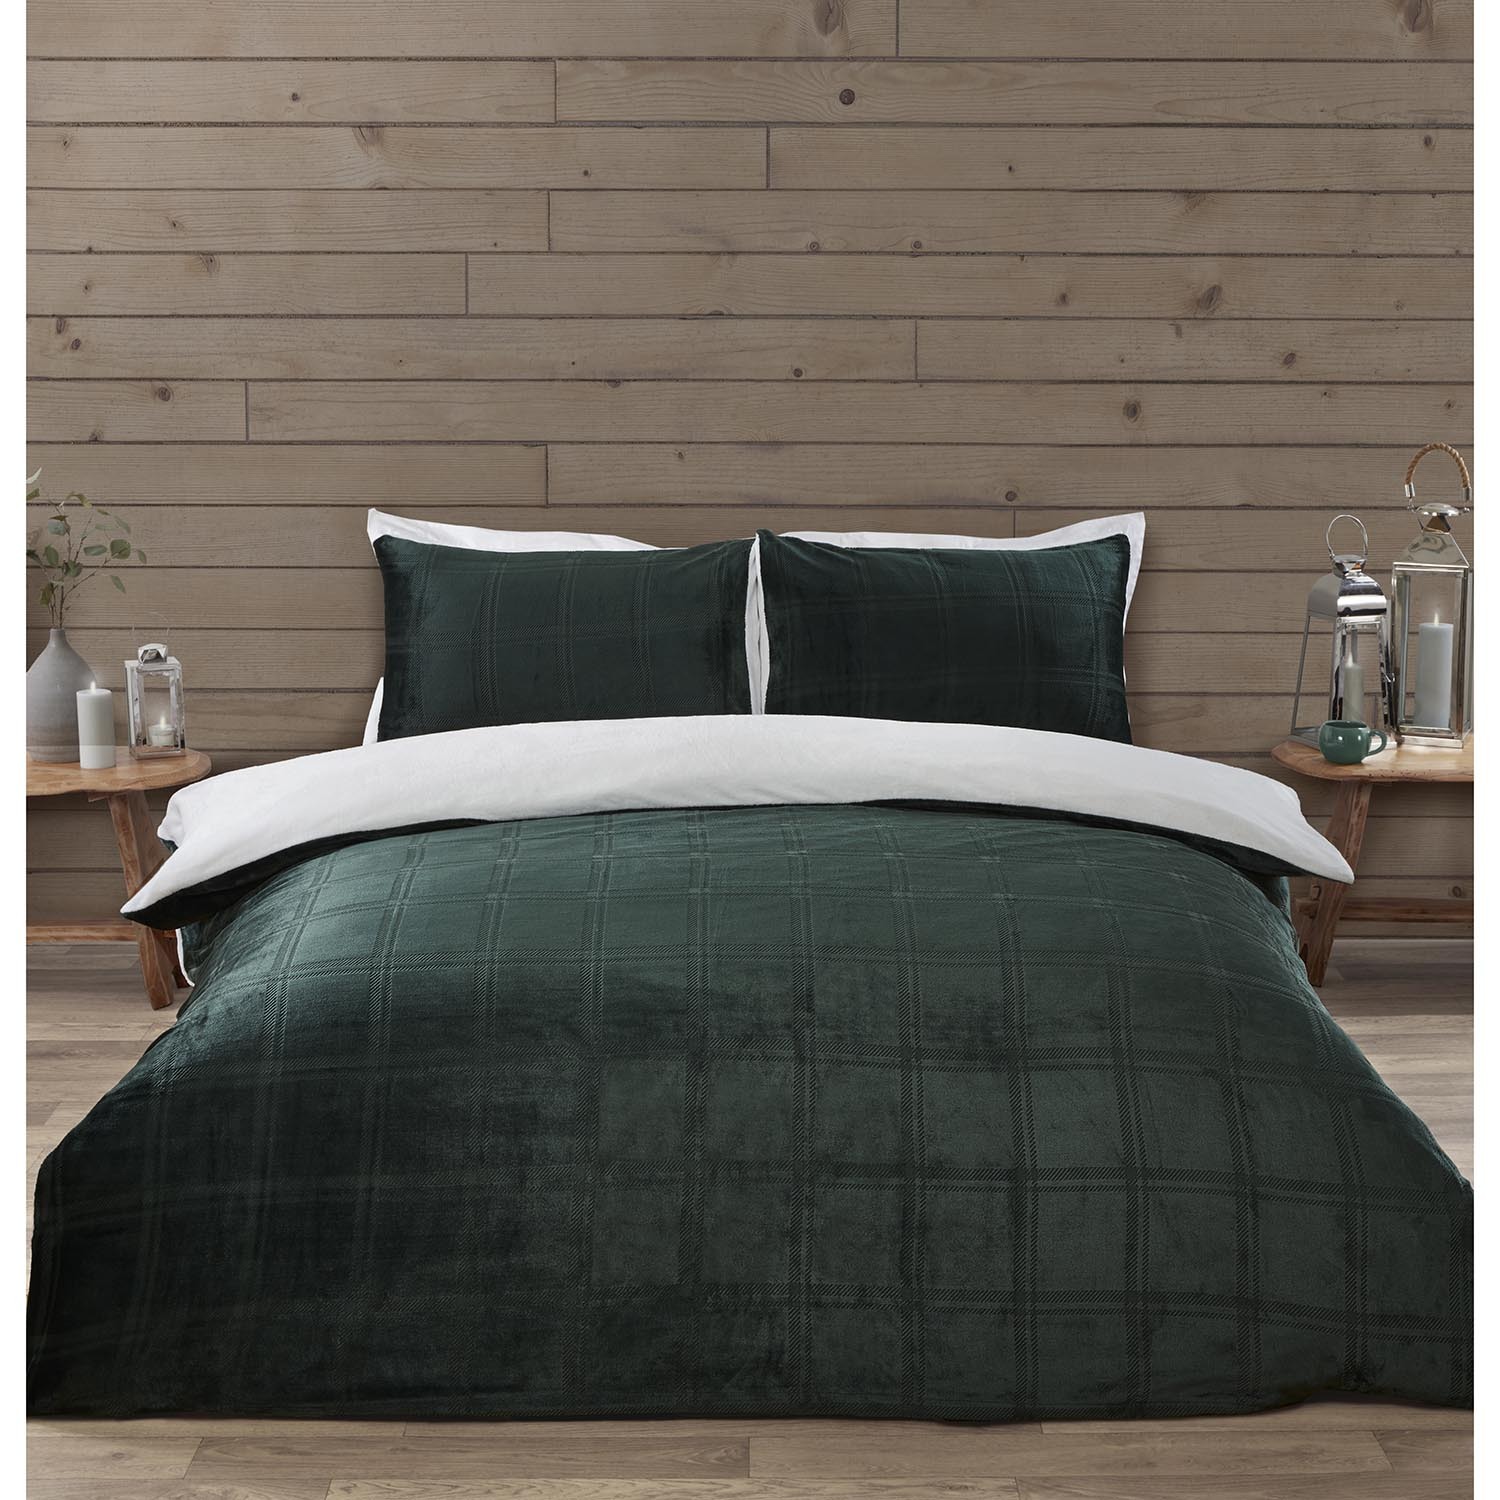 Halston King Size Green Check Fleece Duvet Cover and Pillowcase Set Image 1